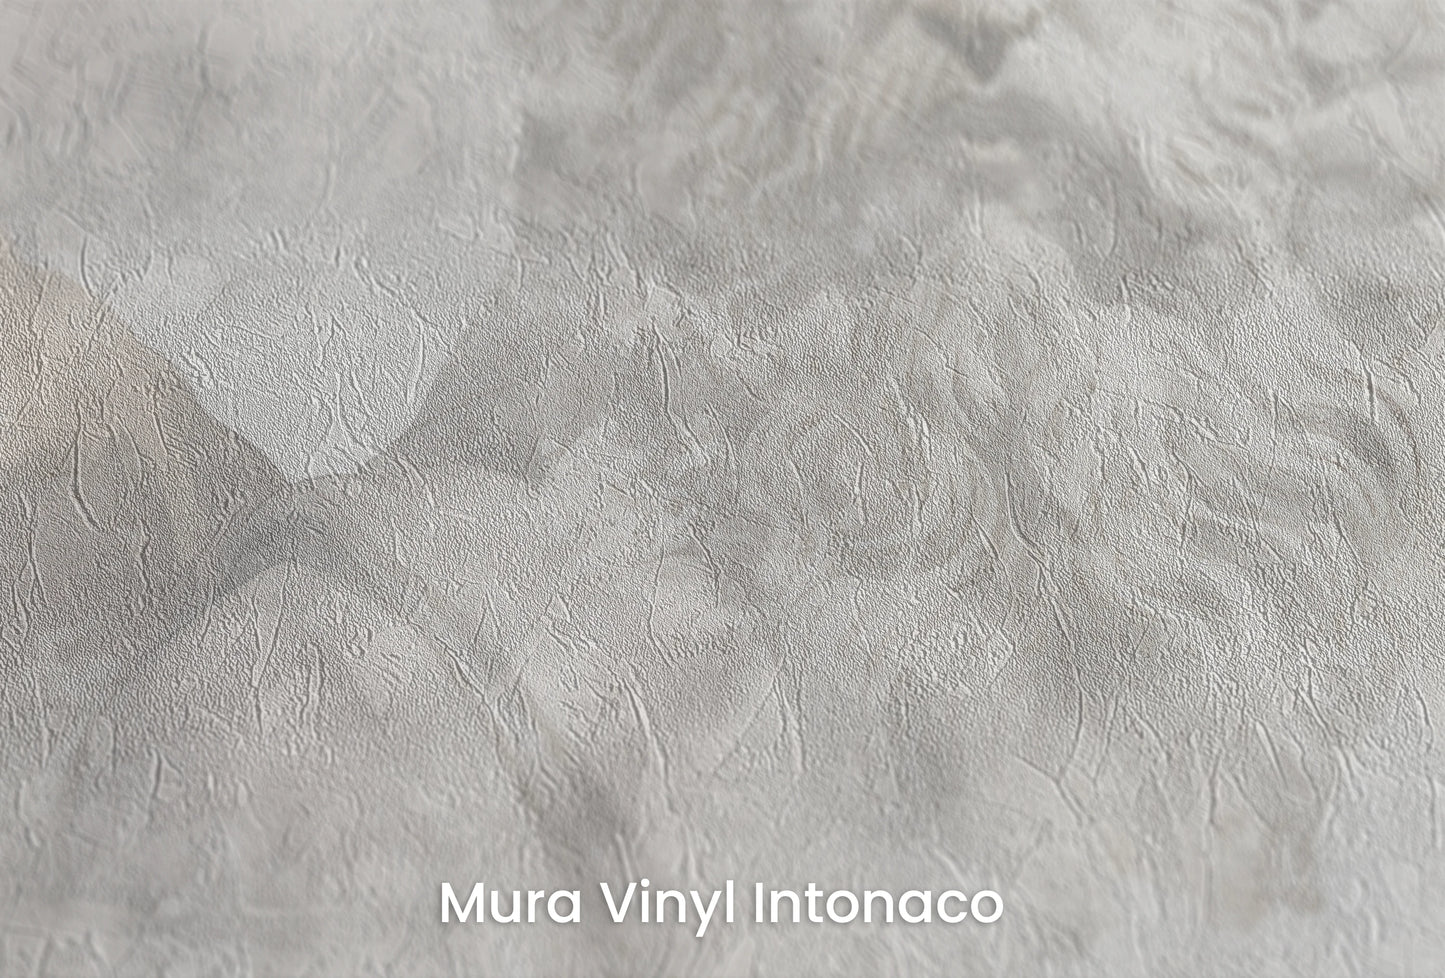 Zbliżenie na artystyczną fototapetę o nazwie Zeus's Introspection na podłożu Mura Vinyl Intonaco - struktura tartego tynku.